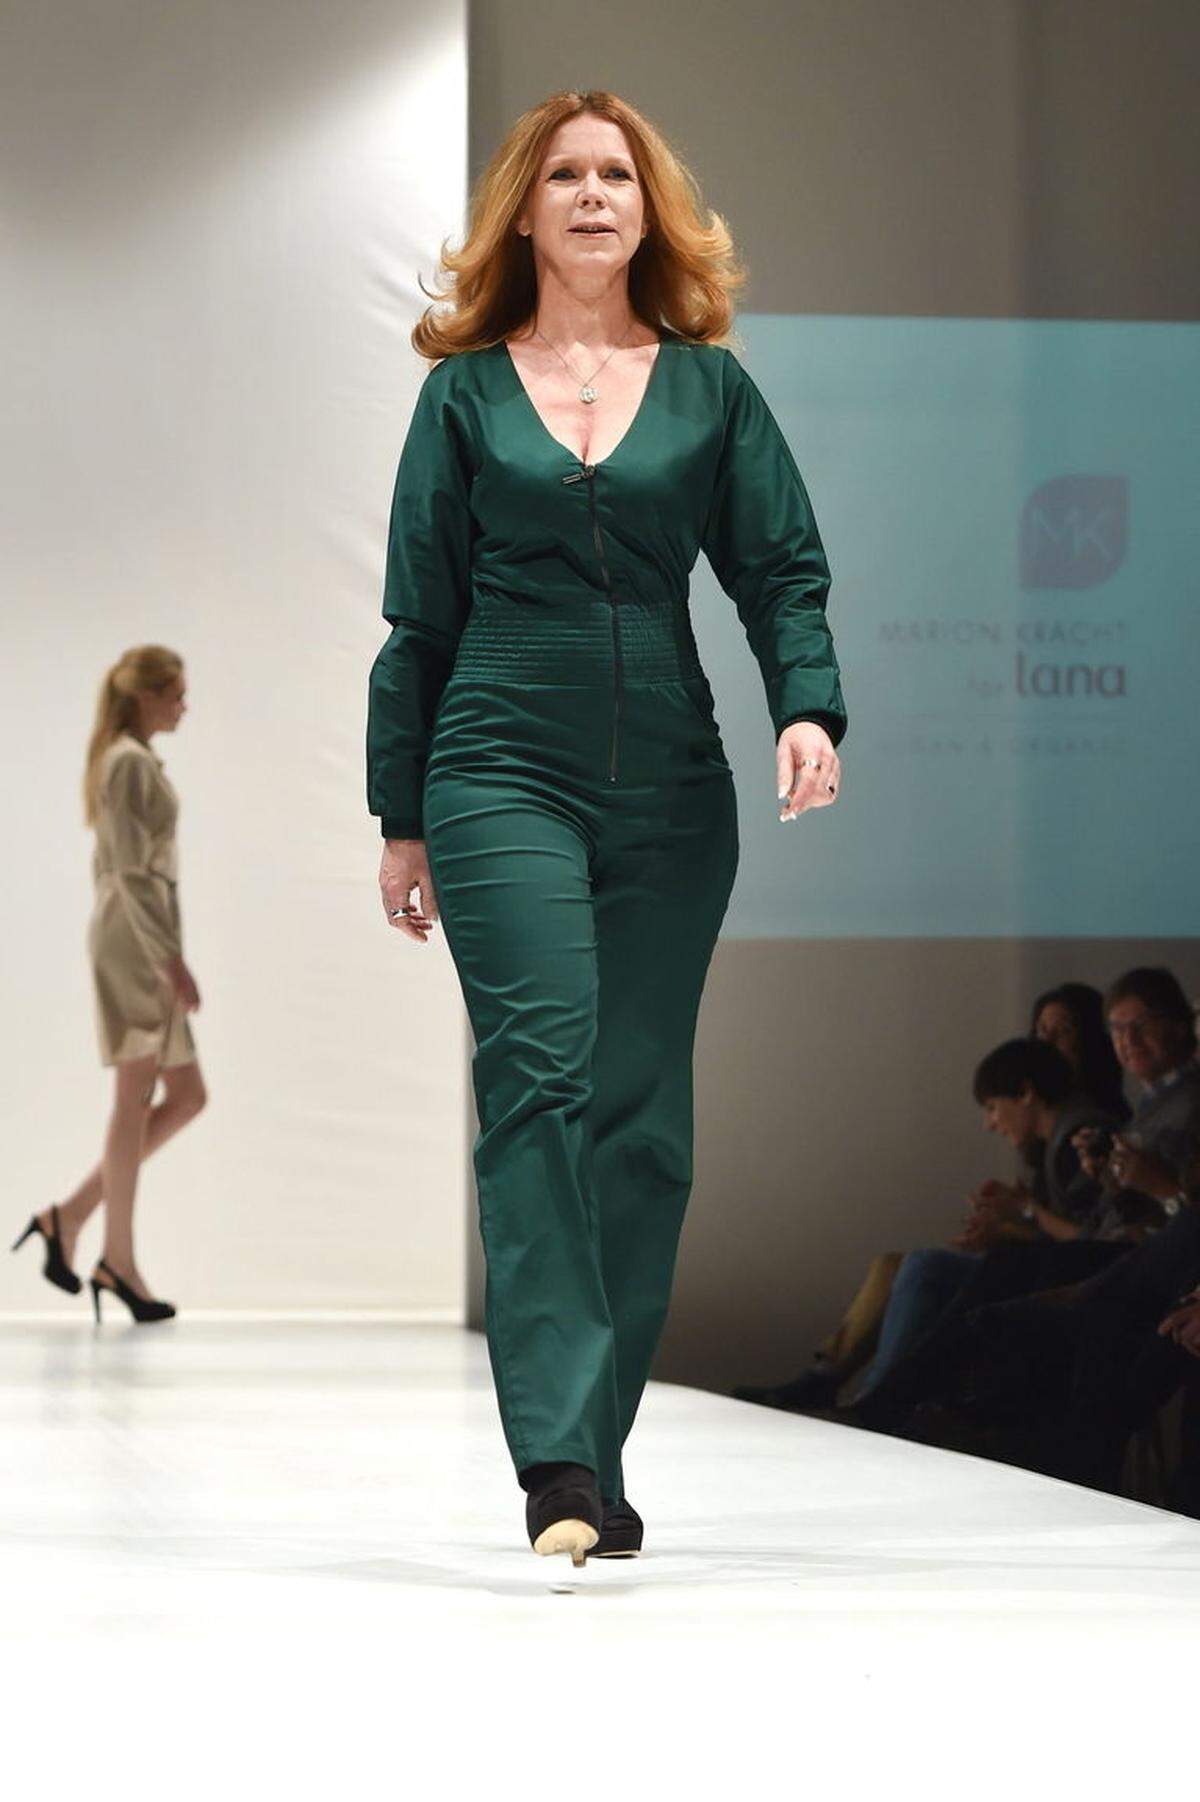 Marion Kracht ist allerdings selbst unter die Modemacher gegangen. Sie präsentierte ihre grüne Kollektion auch selbst auf dem Catwalk: "Marion Kracht for Lana – vegan &amp; organic".